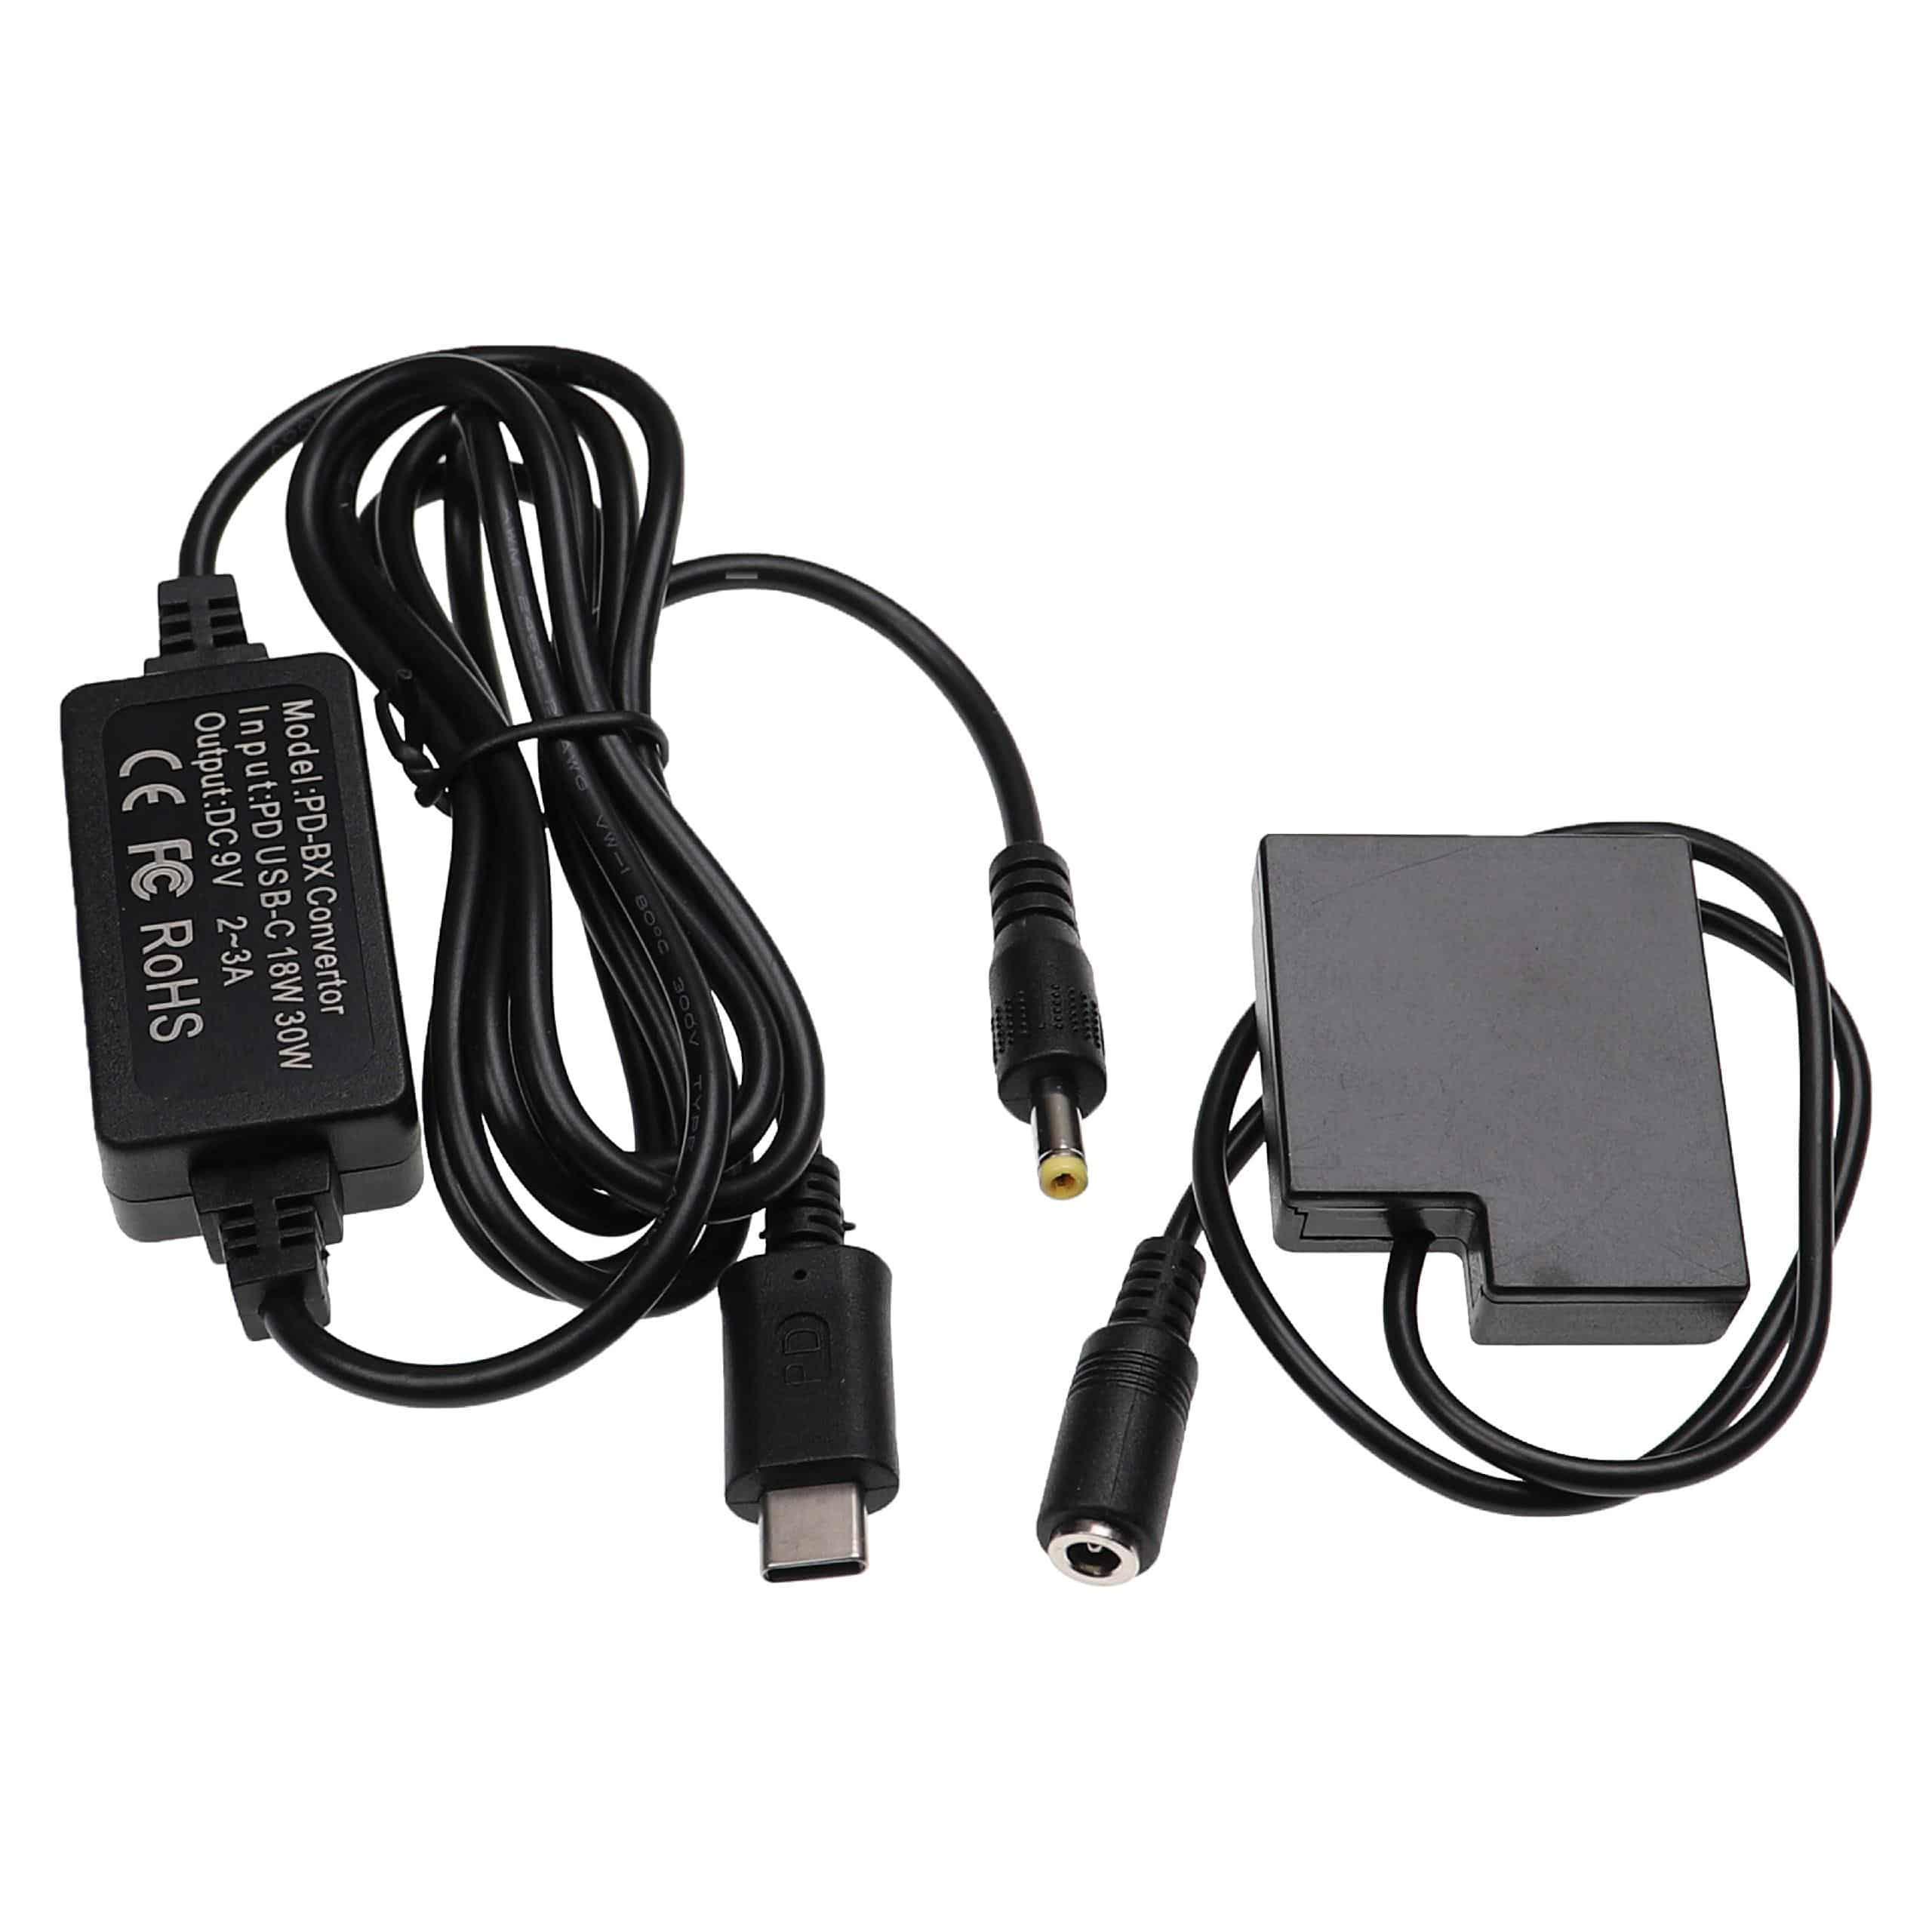 Zasilacz USB do aparatu zam. DMW-AC8 + adapter zam. Panasonic DMW-DCC15 - 2 m, 9 V 3,0 A